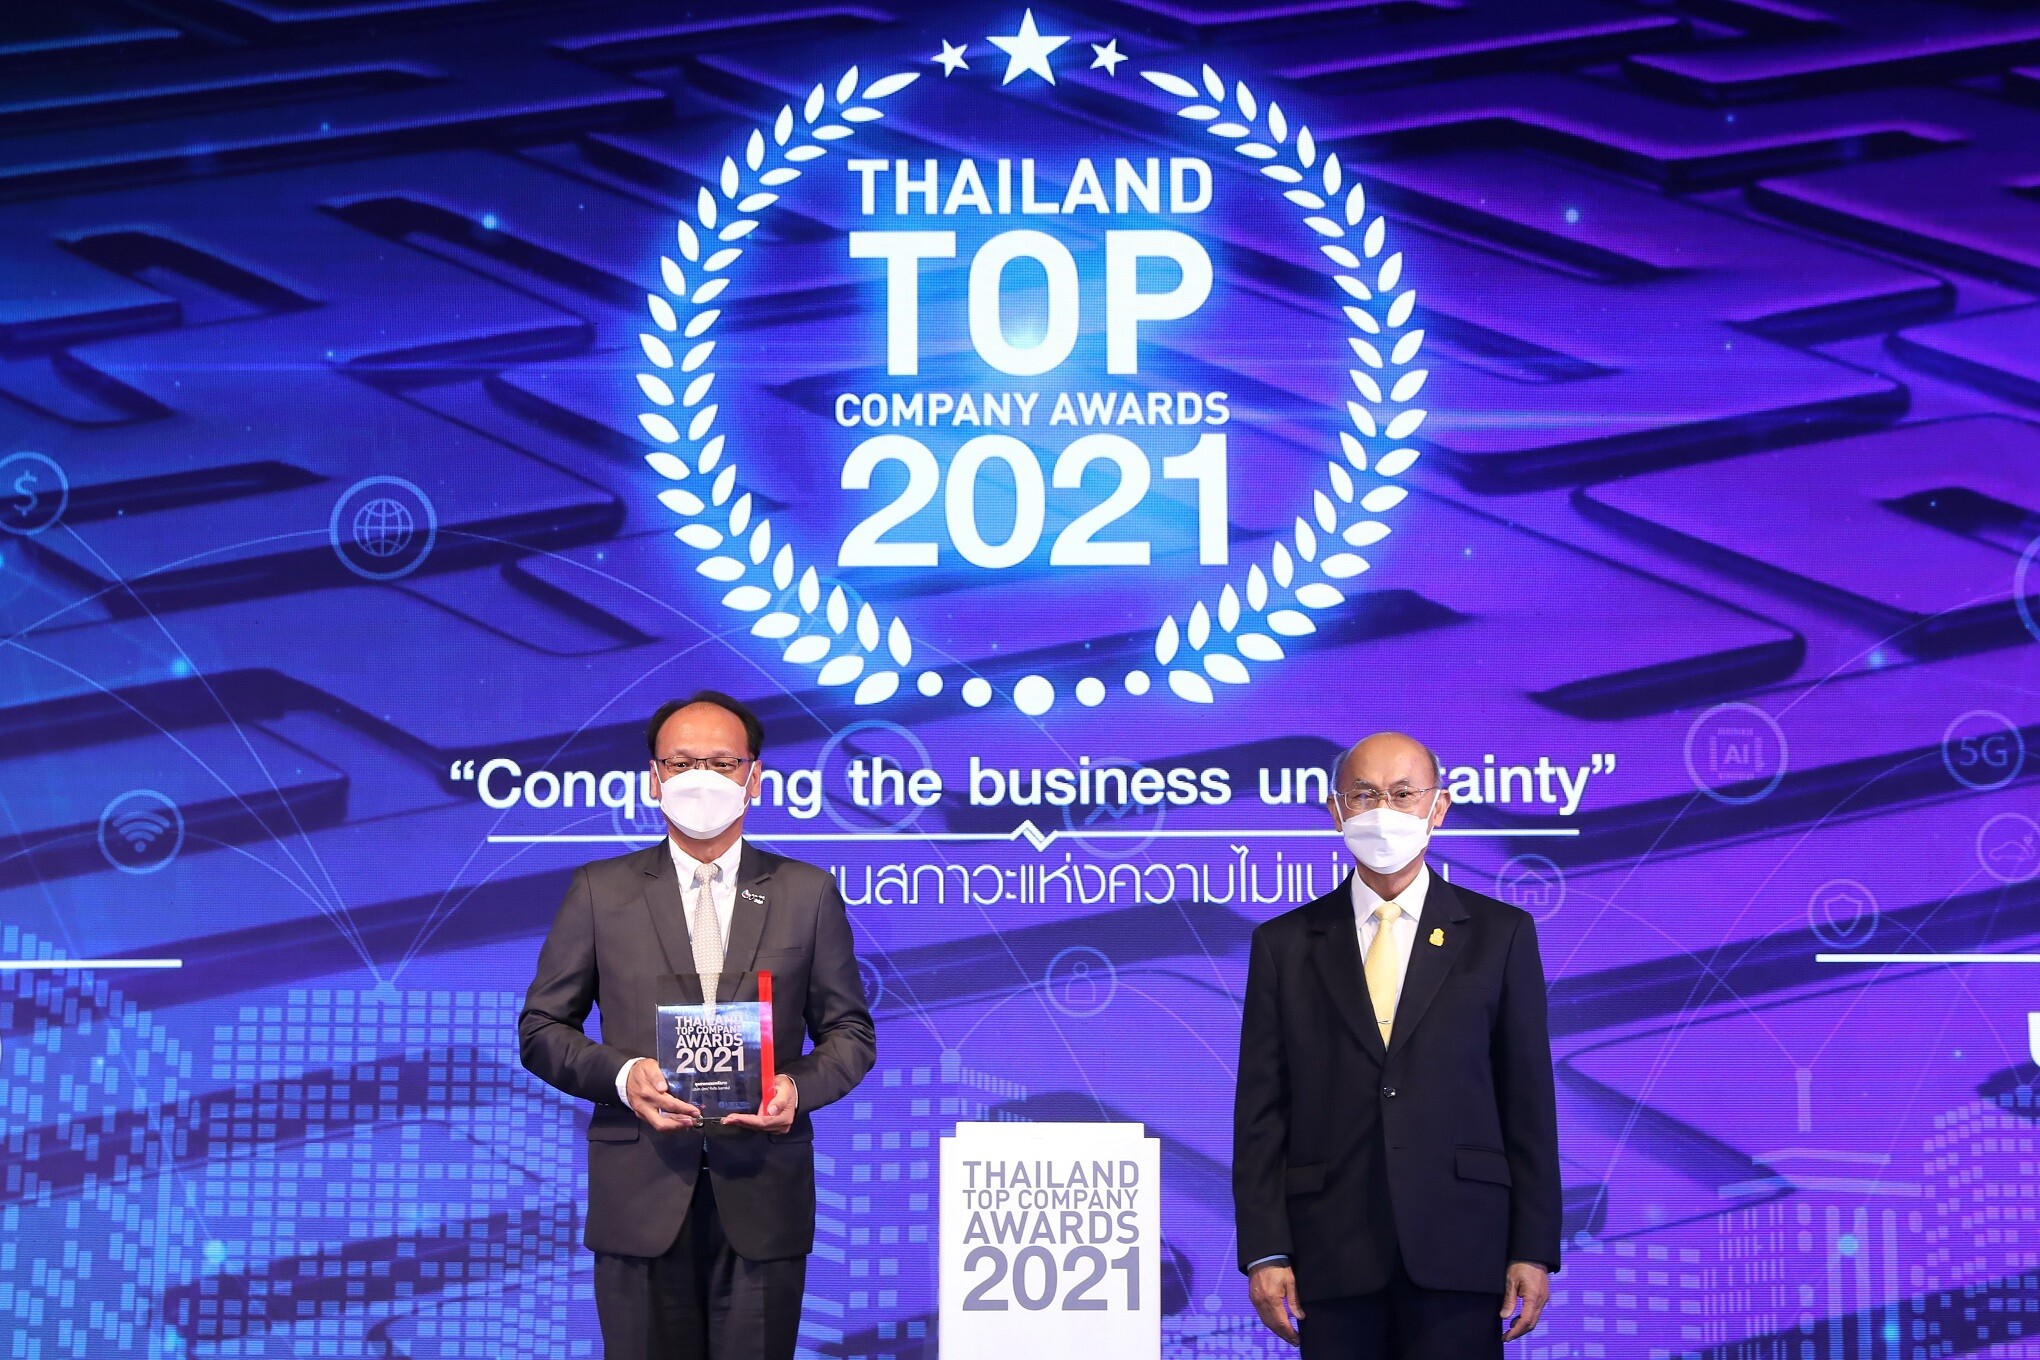 ปตท. คว้ารางวัล "THAILAND TOP COMPANY AWARDS 2021" ประเภทอุตสาหกรรมพลังงาน